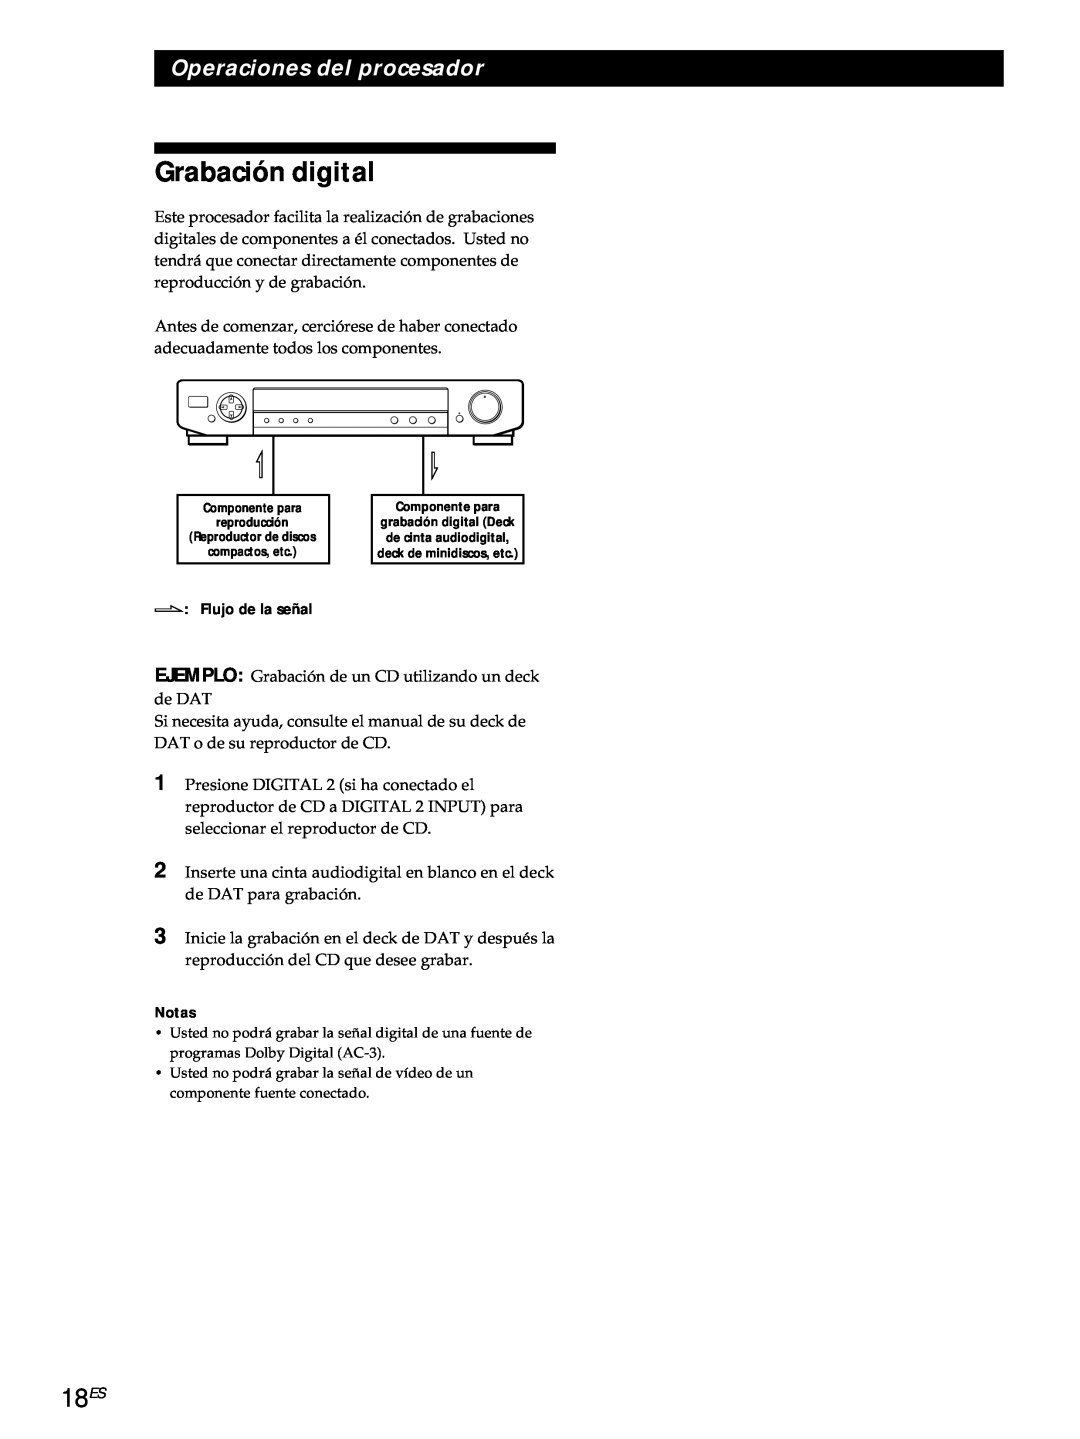 Sony SDP-E800 operating instructions Grabación digital, 18ES, Operaciones del procesador 